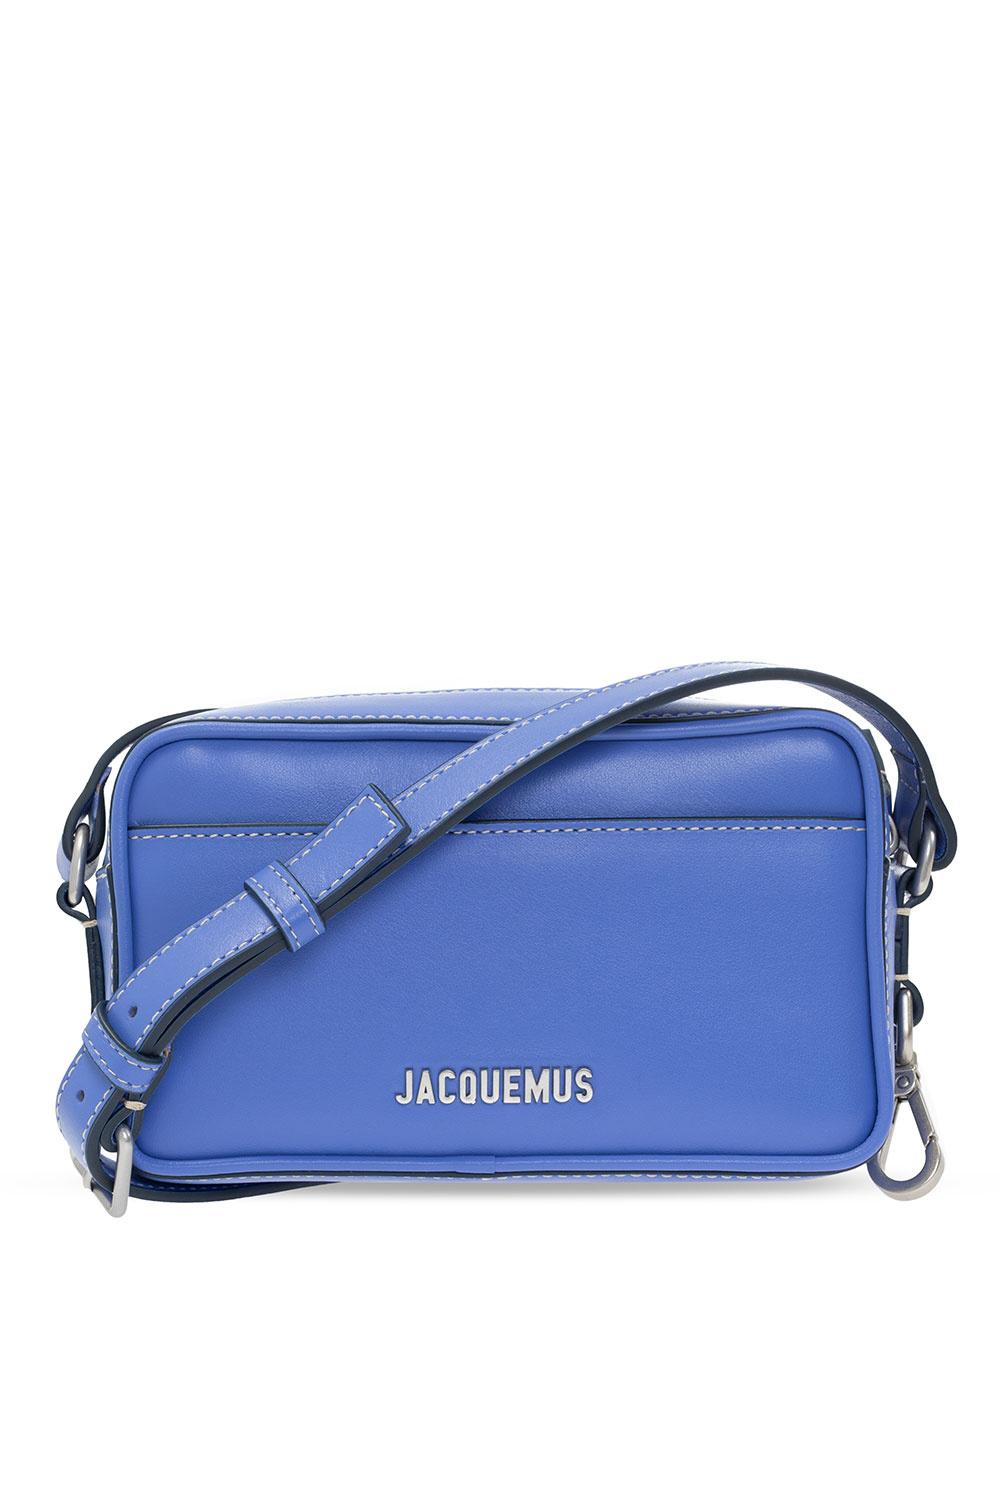 Jacquemus 'le Baneto' Shoulder Bag in Blue for Men